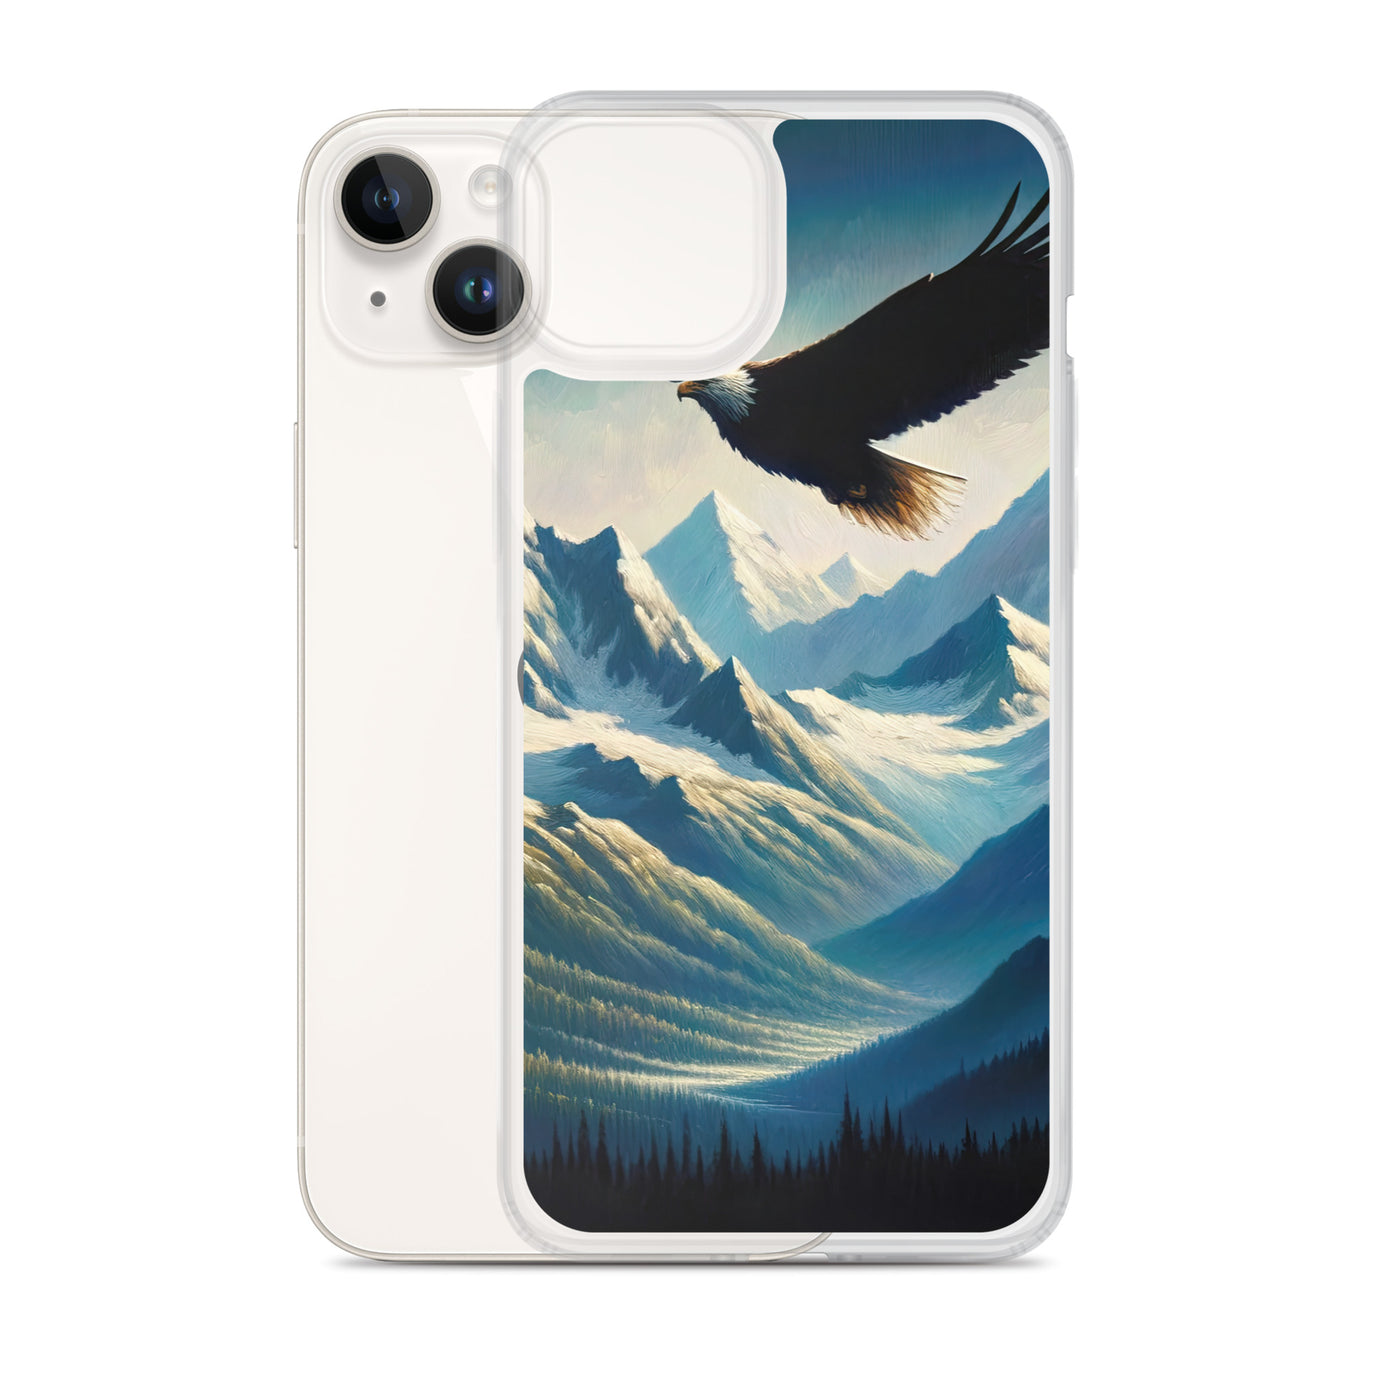 Ölgemälde eines Adlers vor schneebedeckten Bergsilhouetten - iPhone Schutzhülle (durchsichtig) berge xxx yyy zzz